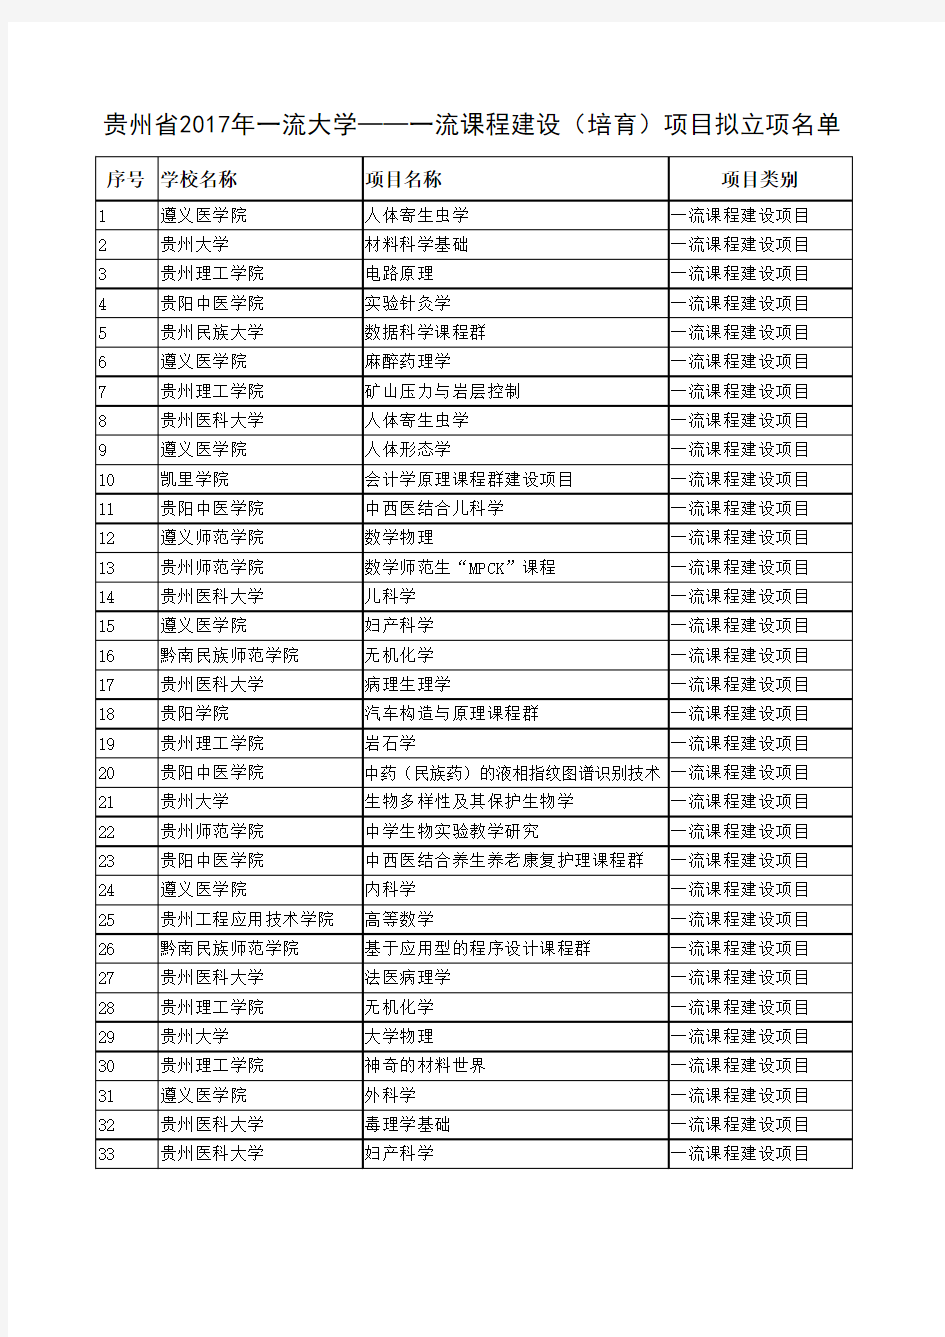 贵州省2017年一流大学--一流专业建设(培育)项目拟立项名单